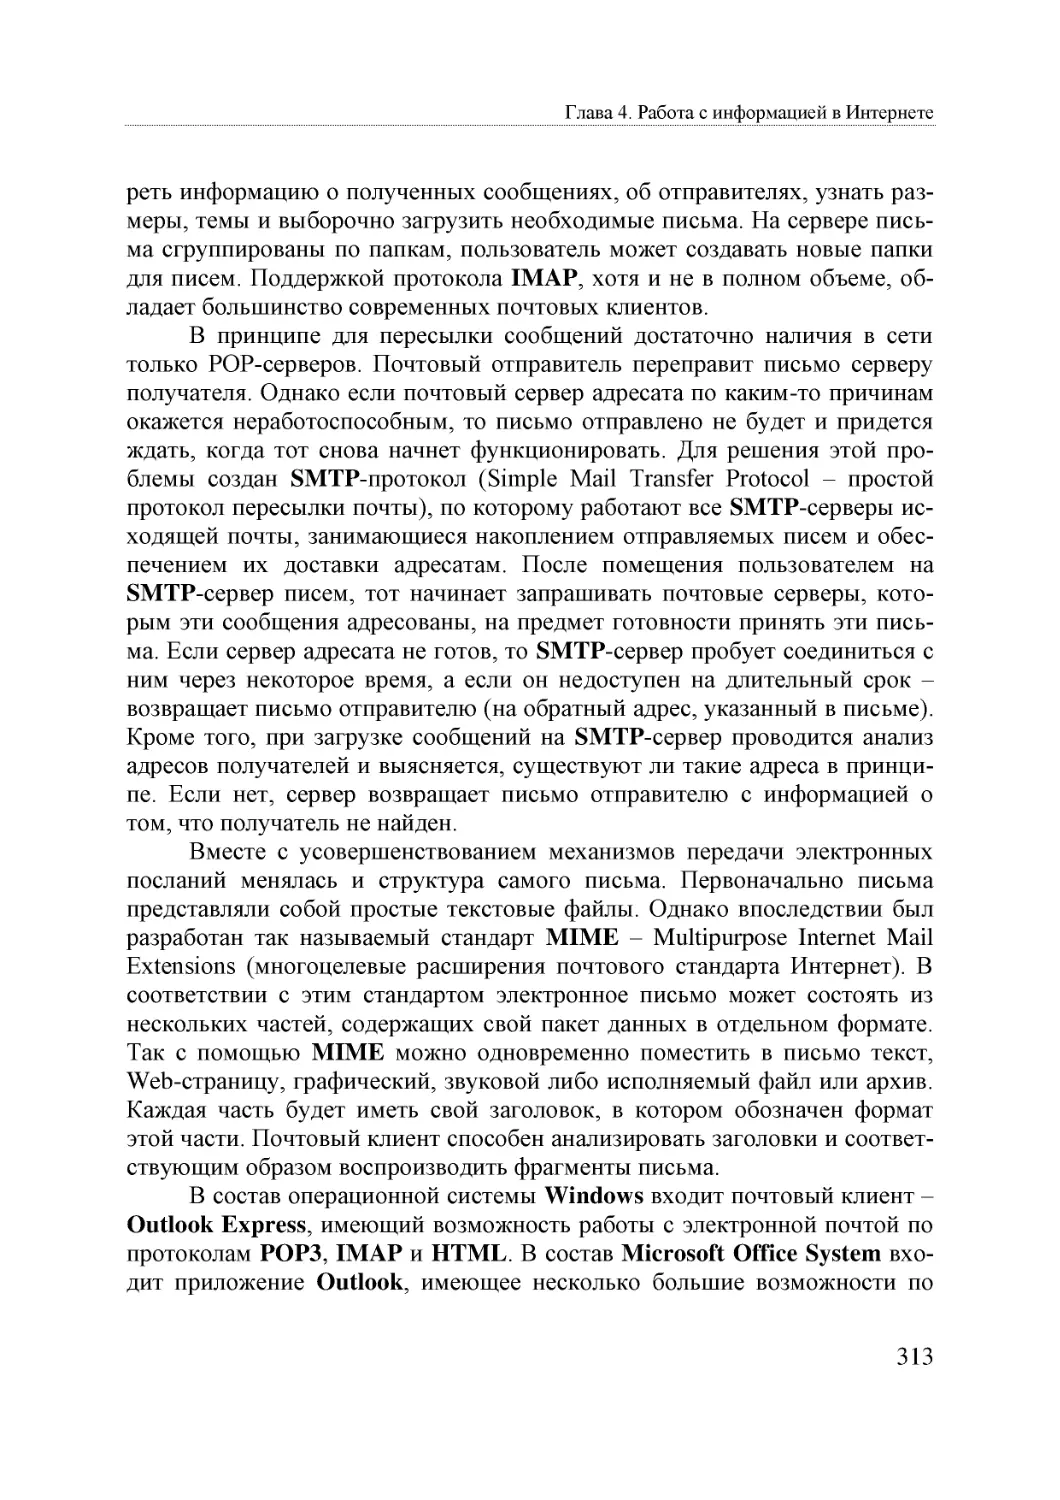 Informatika_Uchebnik_dlya_vuzov_2010 313